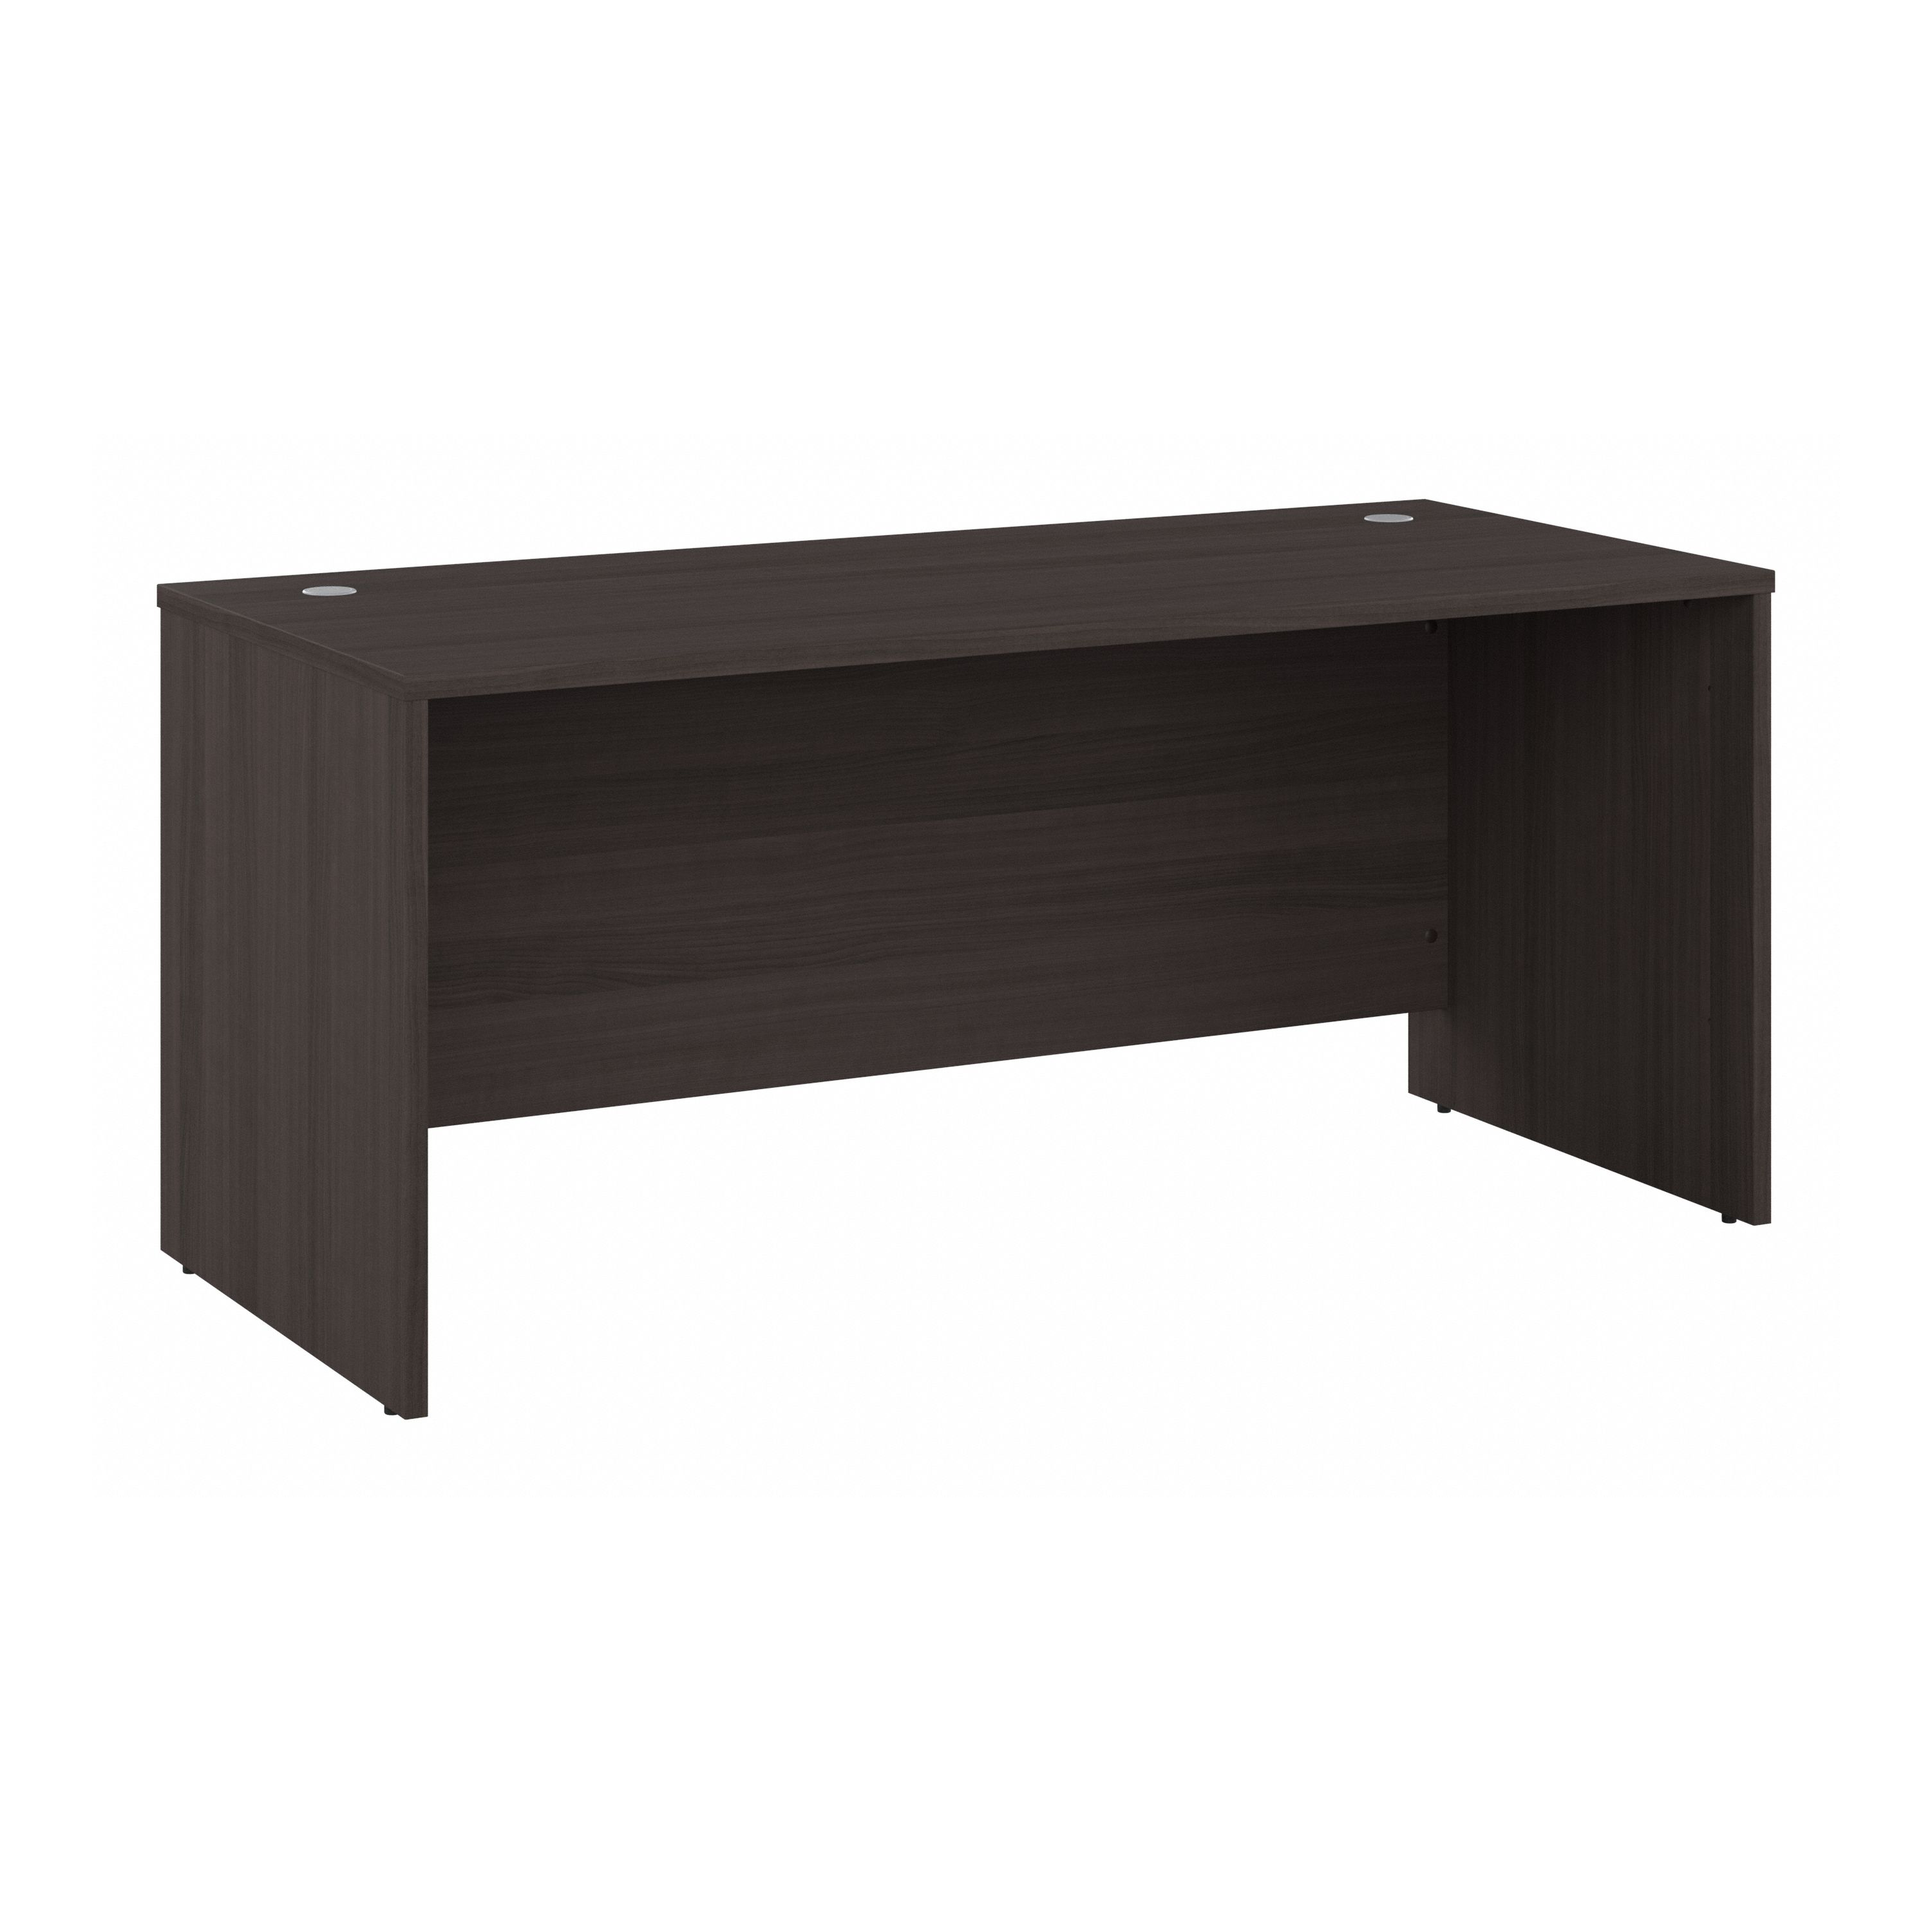 Shop Bush Business Furniture Studio C 66W x 30D Office Desk 02 SCD166SG #color_storm gray